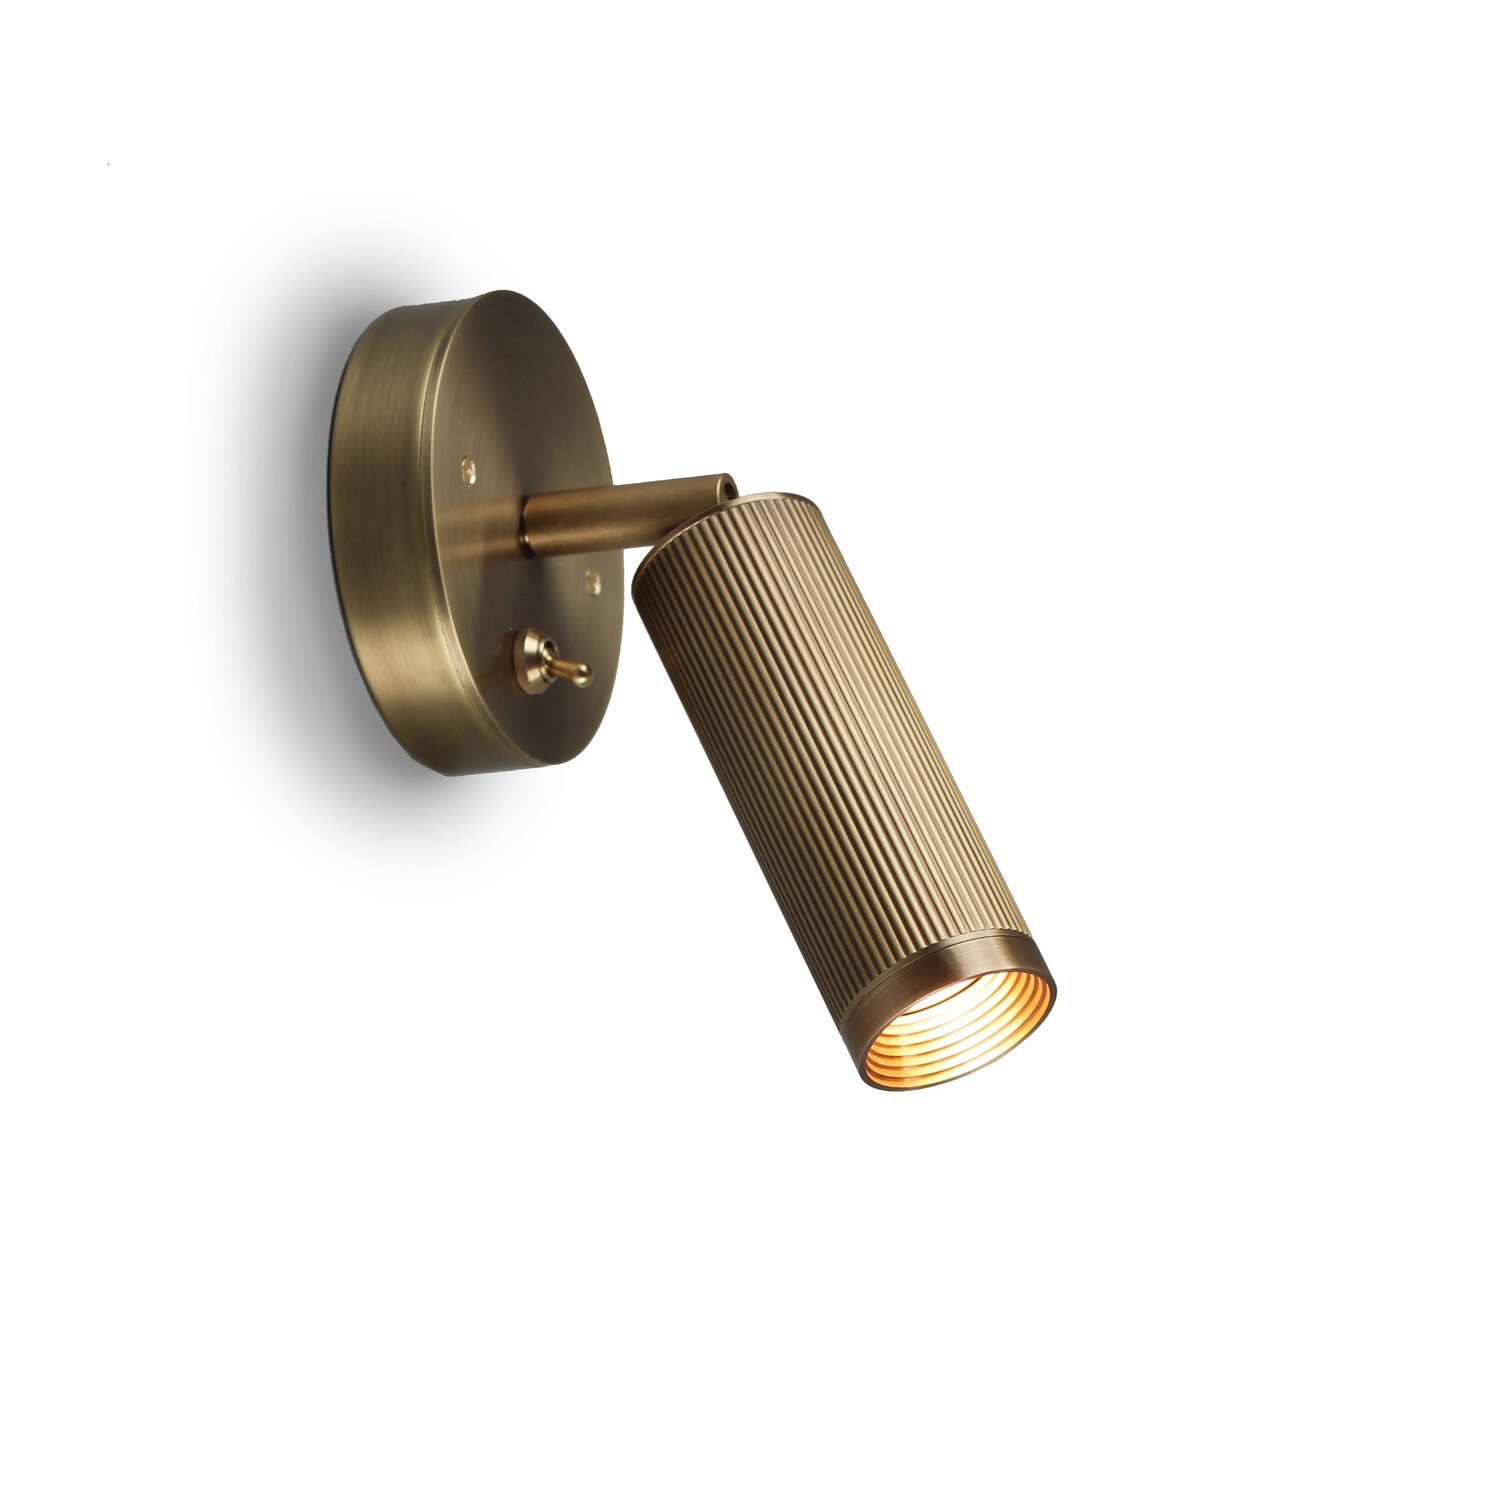 J Adams & Co – Spot Switched Wall Light Fixture – Brass Colour – Brass Material